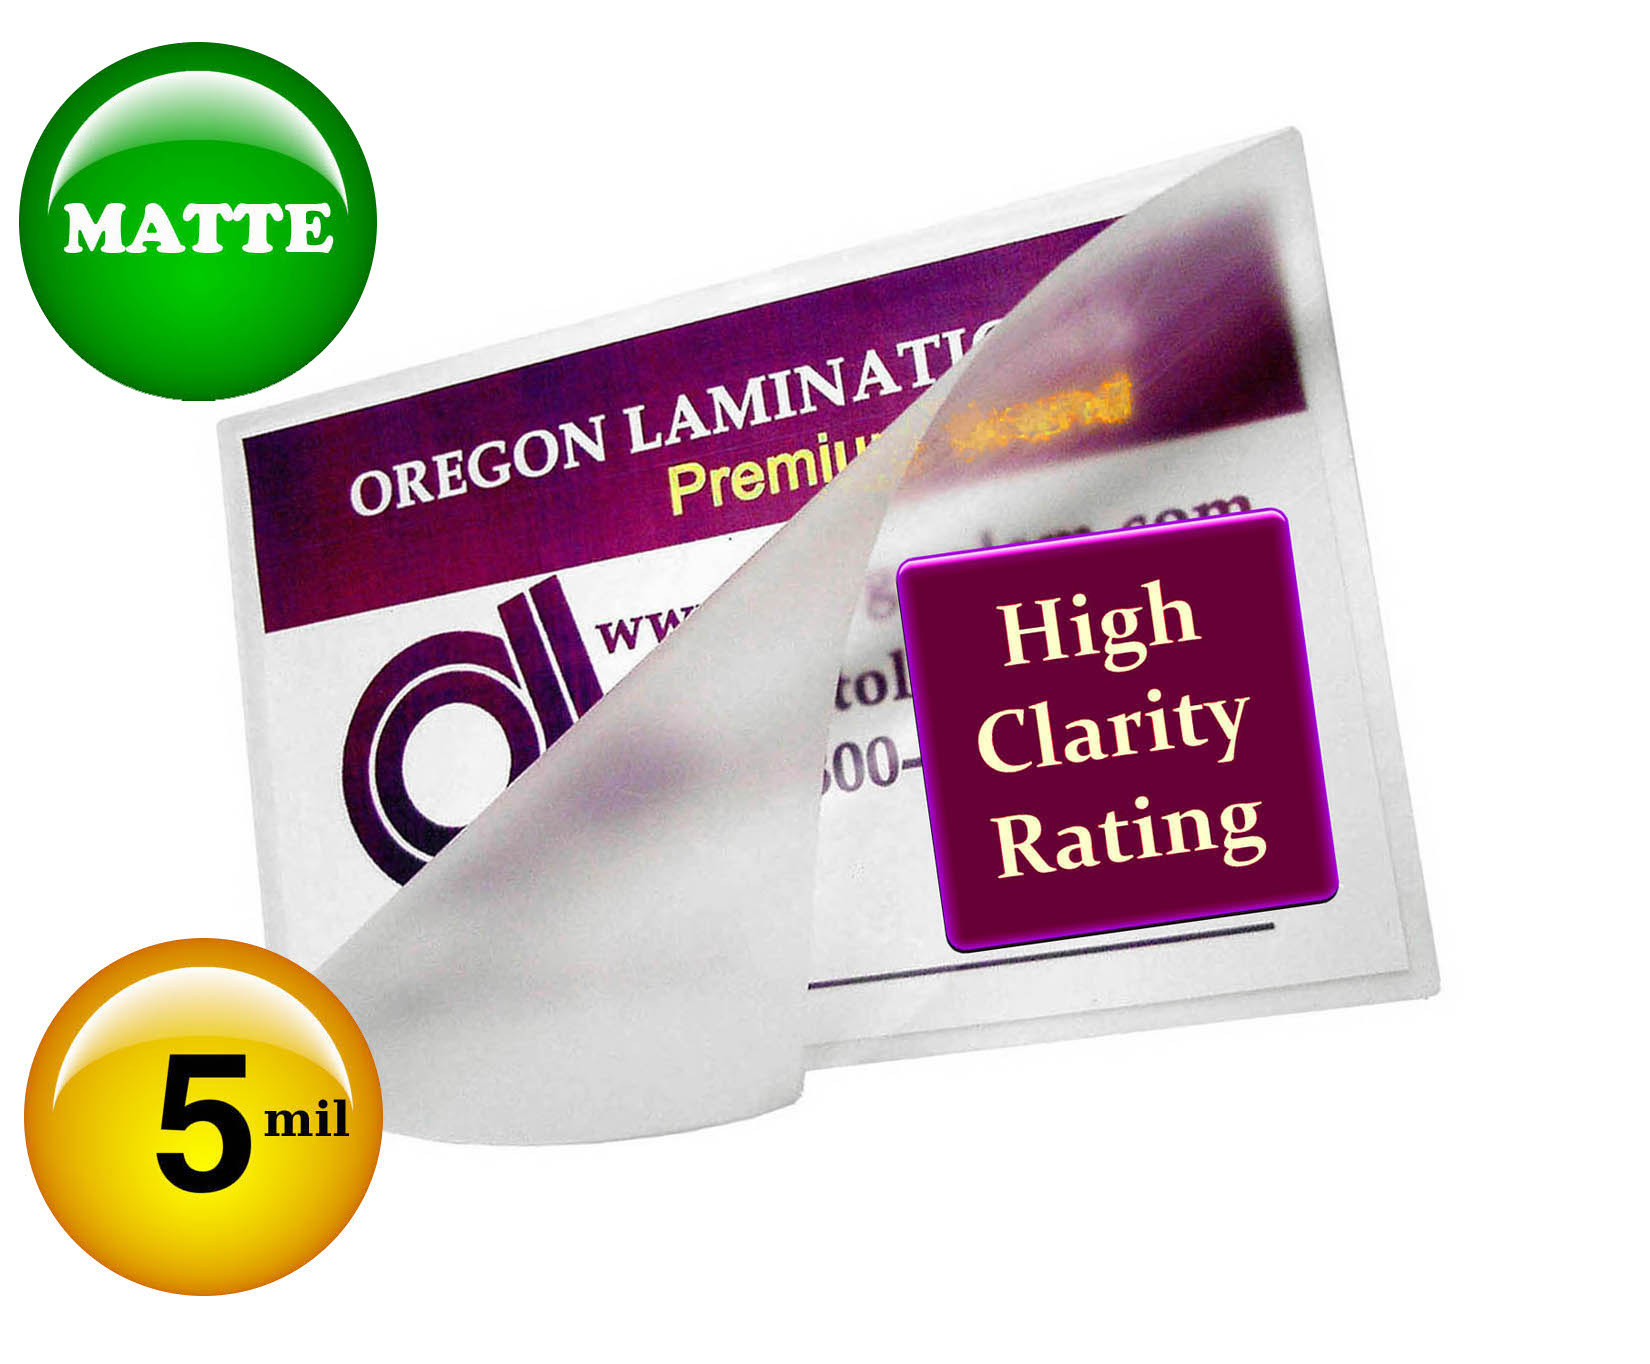 Oregon Lamination Premium Matte Letter Laminating Pouches 5 Mil 9 x 11-1/2 Hot Qty 100 JJ182897